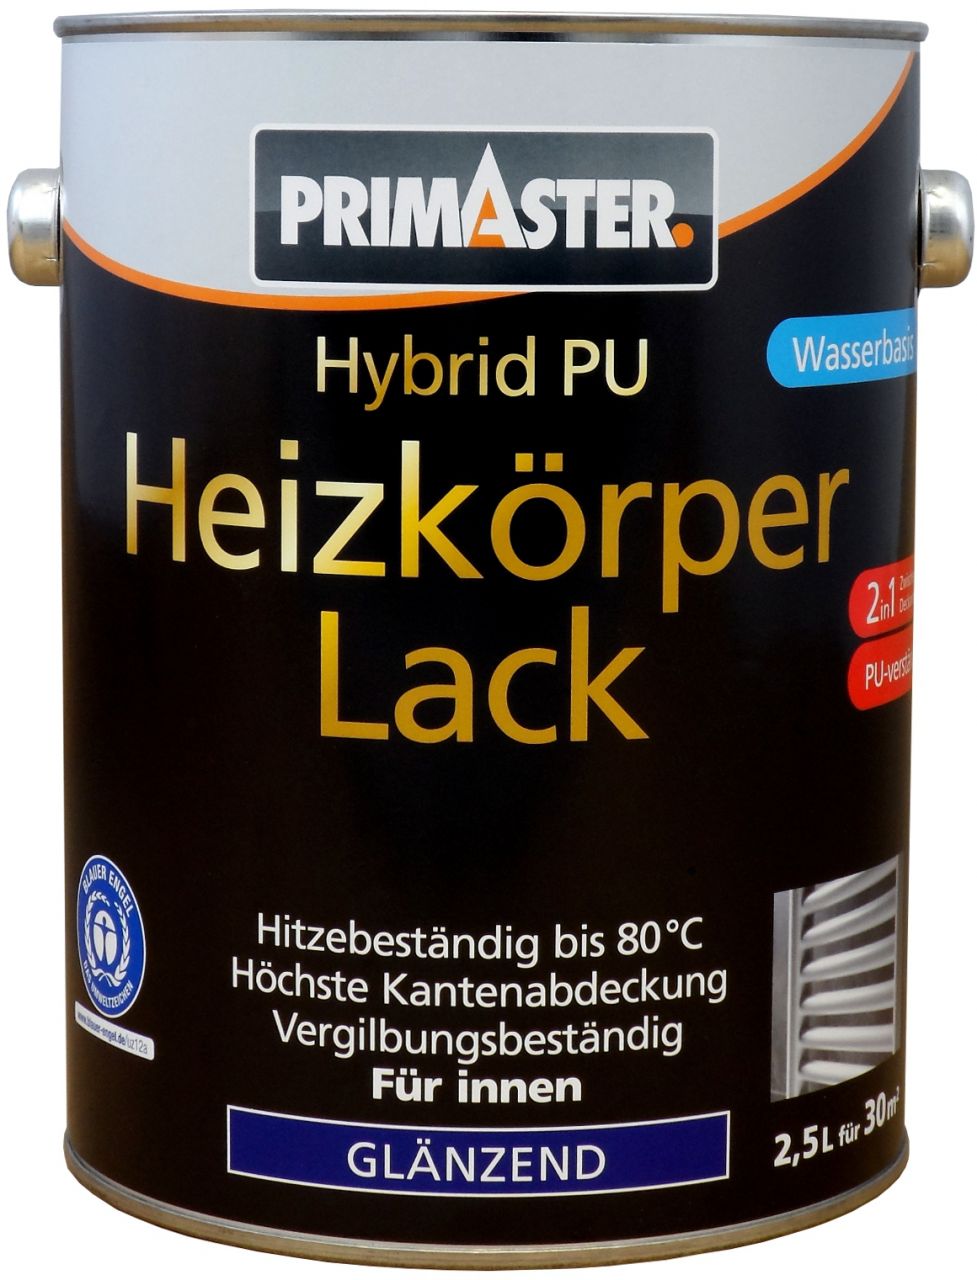 Primaster Hybrid-PU Heizkörperlack 2,5 L weiß glänzend von Primaster